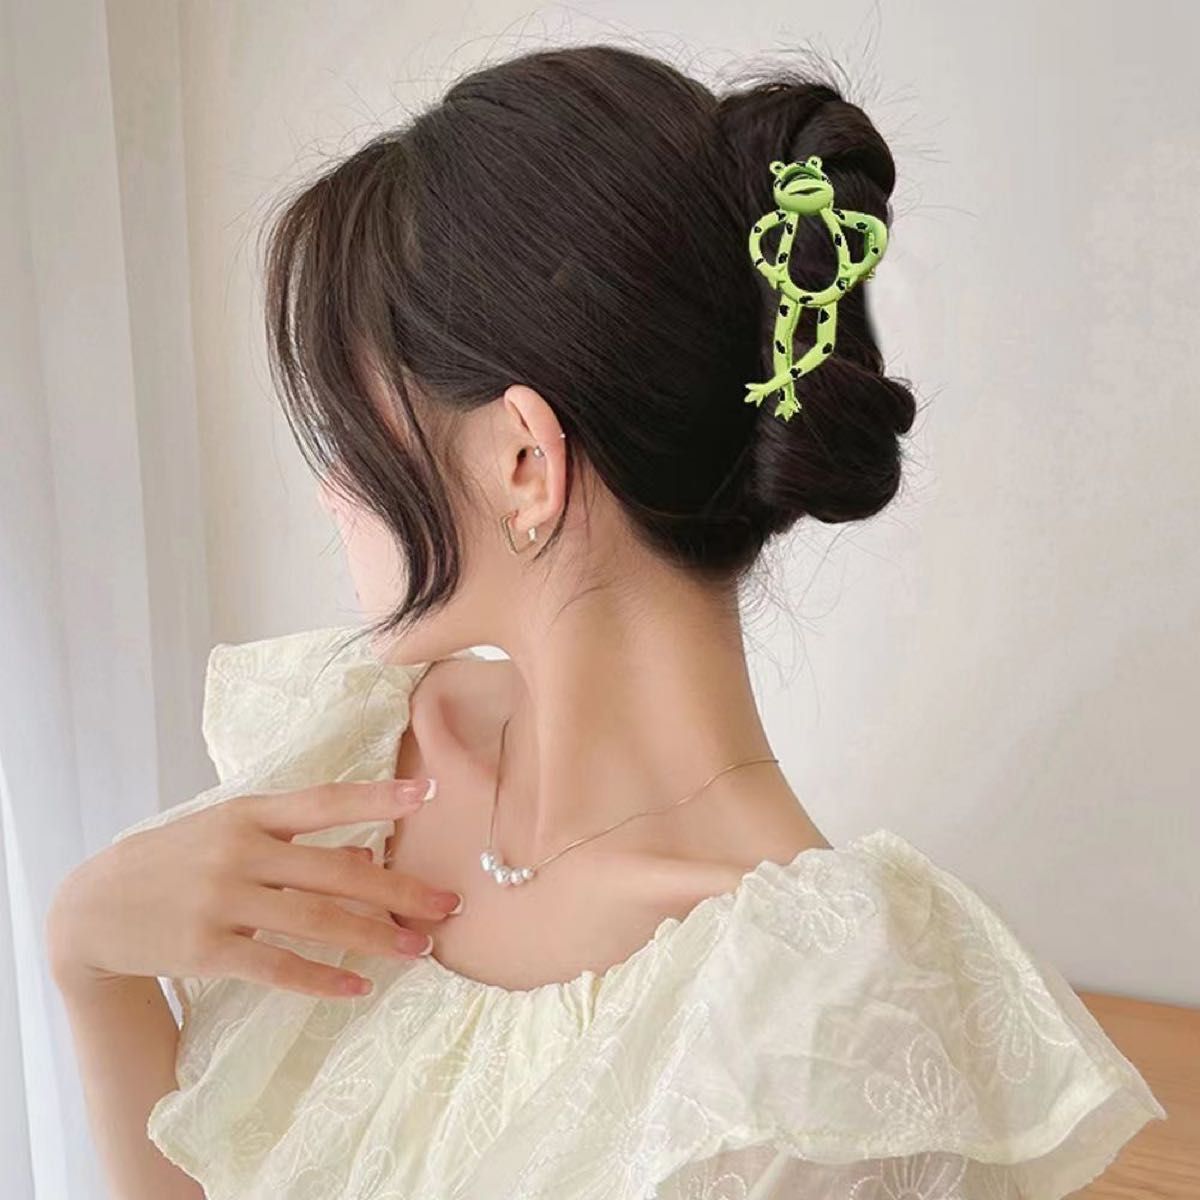 かわいい ヘアクリップ ヘアピン ヘアアクセ カエル 動物 髪飾り 個性的 韓国 かわいい 人気 緑 グリーン バンズクリップ